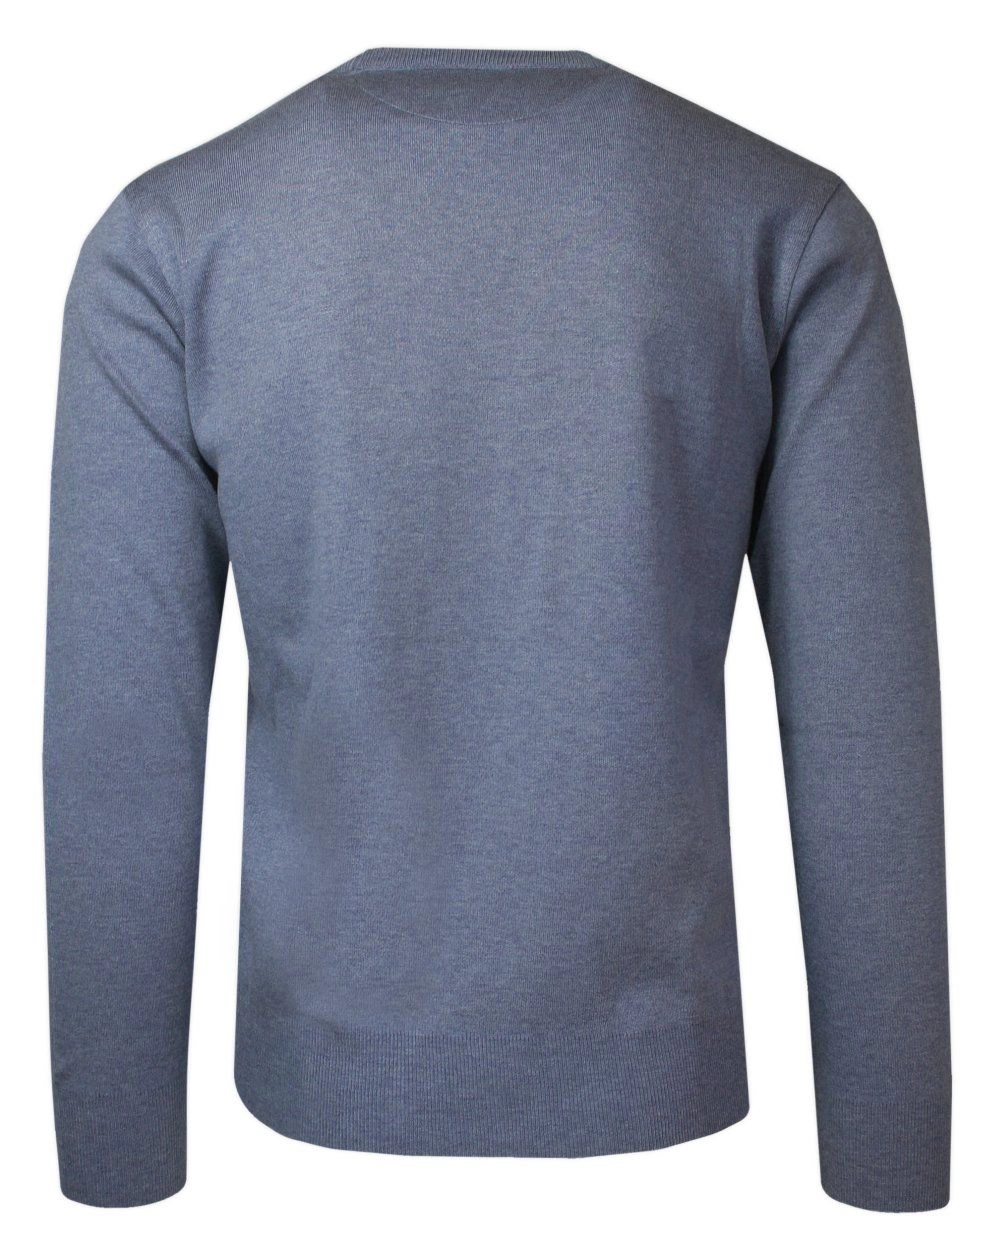 Sweter Męski Niebieski Wełniany, z Okrągłym Dekoltem, U-neck -HOVARD